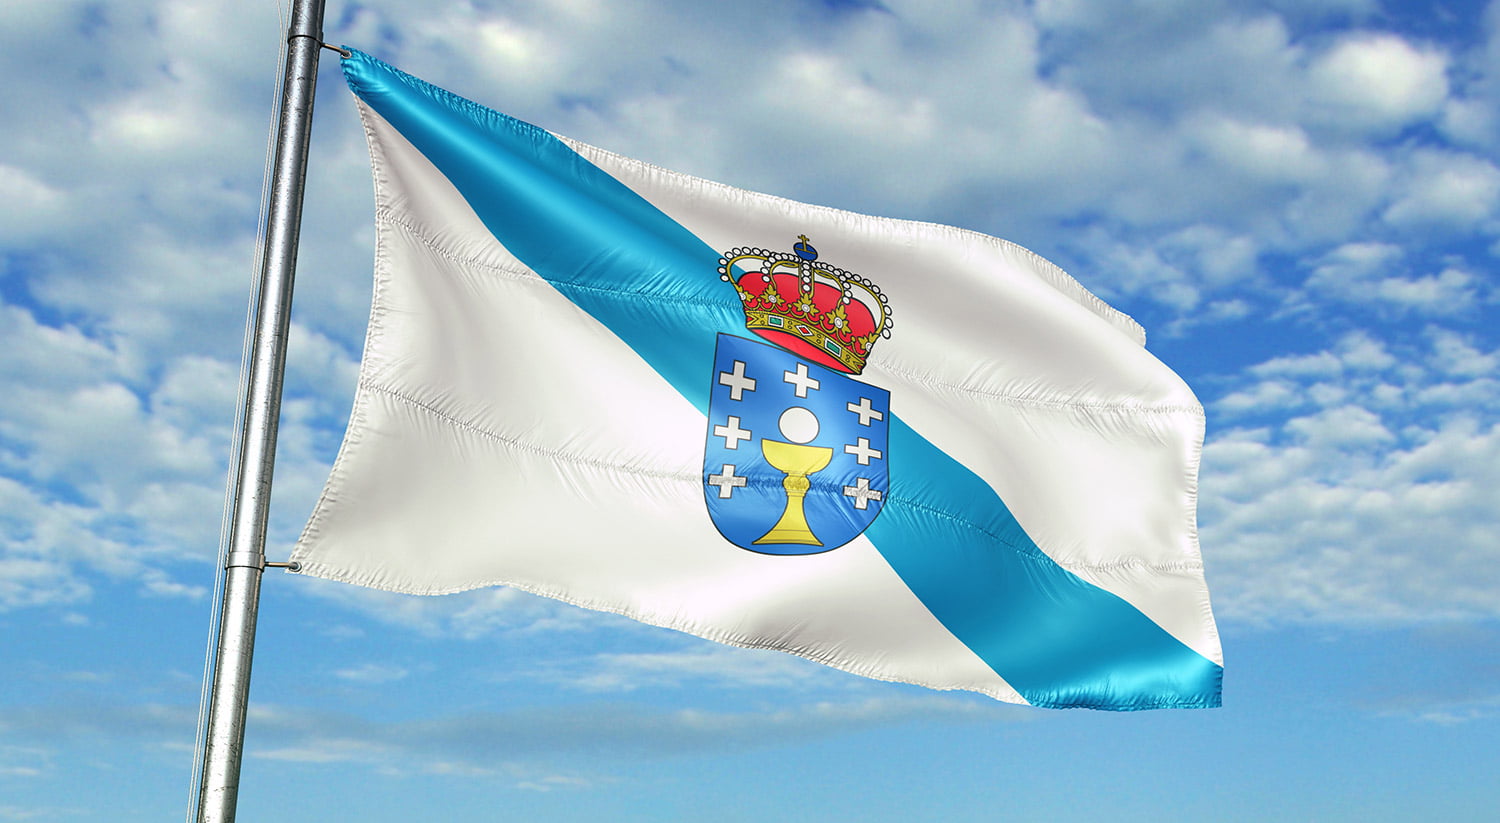 Bandera Galicia : idioma gallego